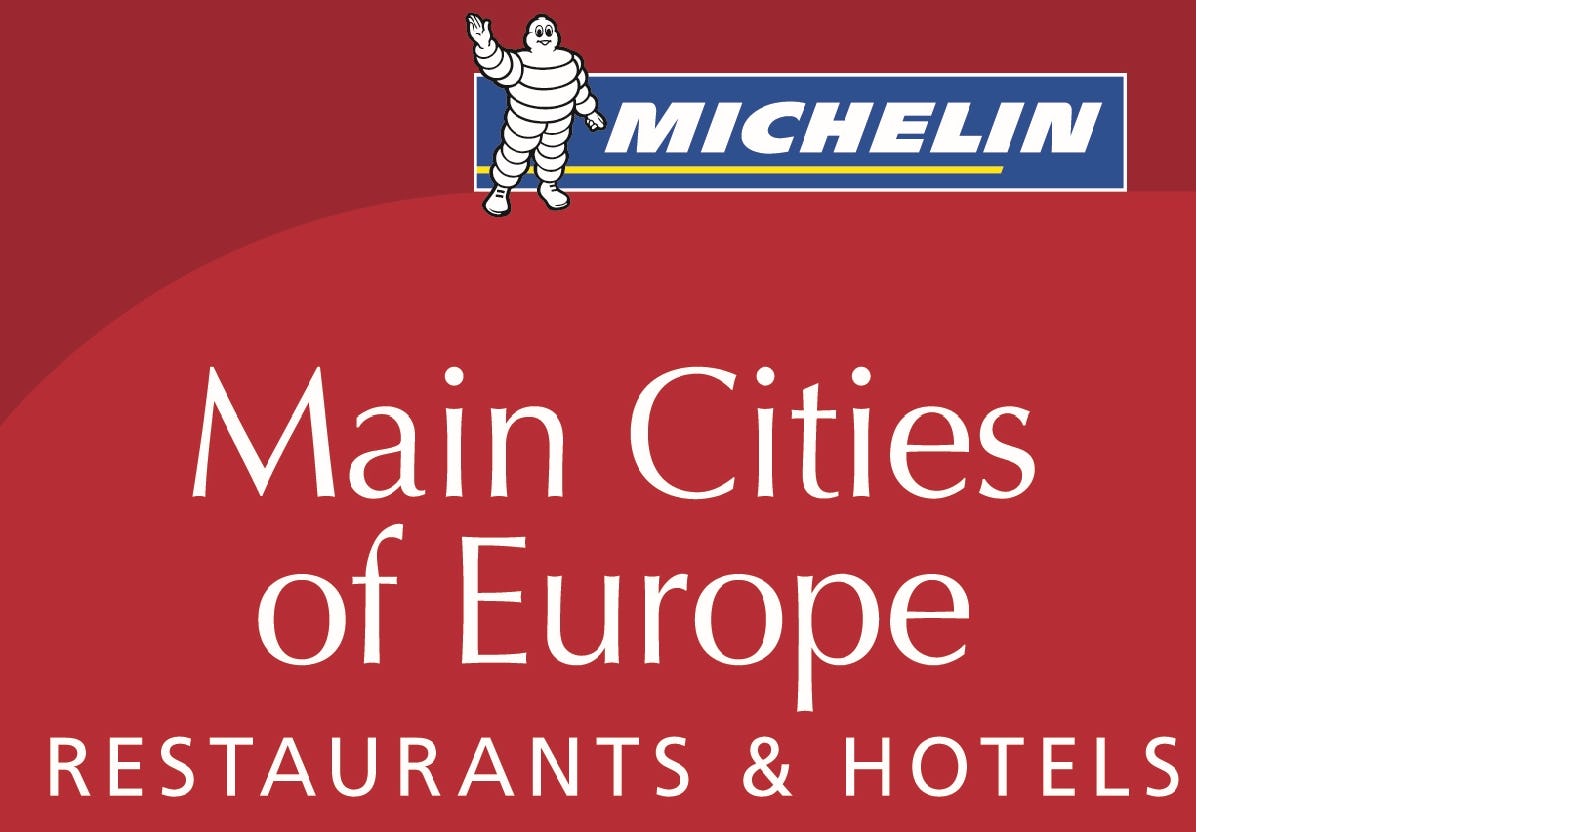 Veel nieuwe sterrenrestaurants in Michelin's 'Main Cities of Europe'